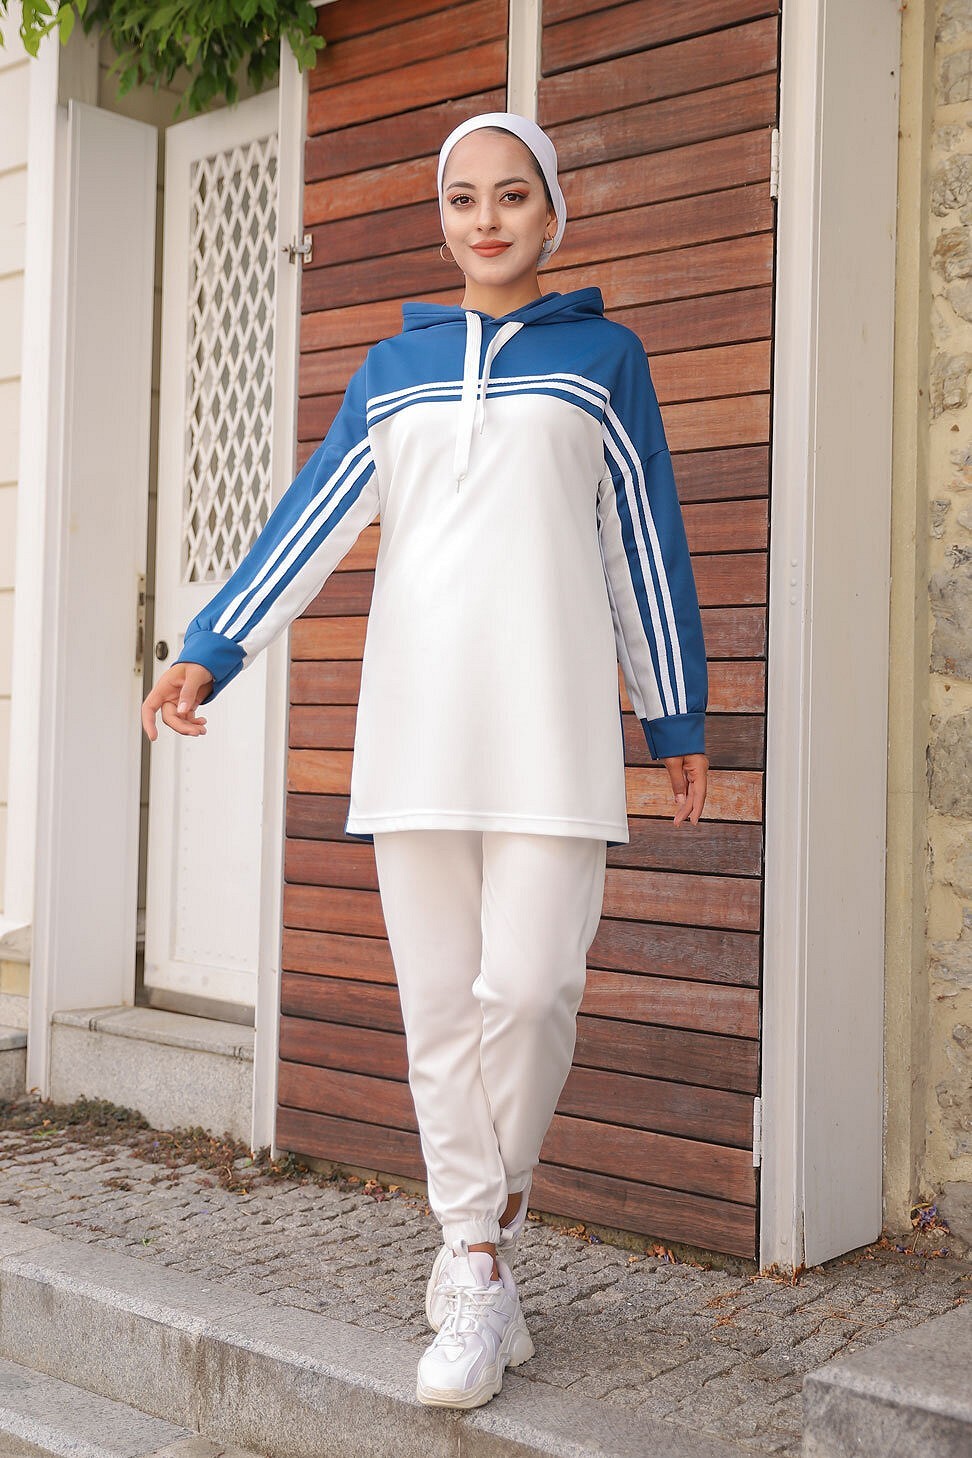 Survêtement femme (Ensemble décontracté sweet à capuche et pantalon) -  Couleur Blanc et Bleu indigo - Prêt à porter et accessoires sur